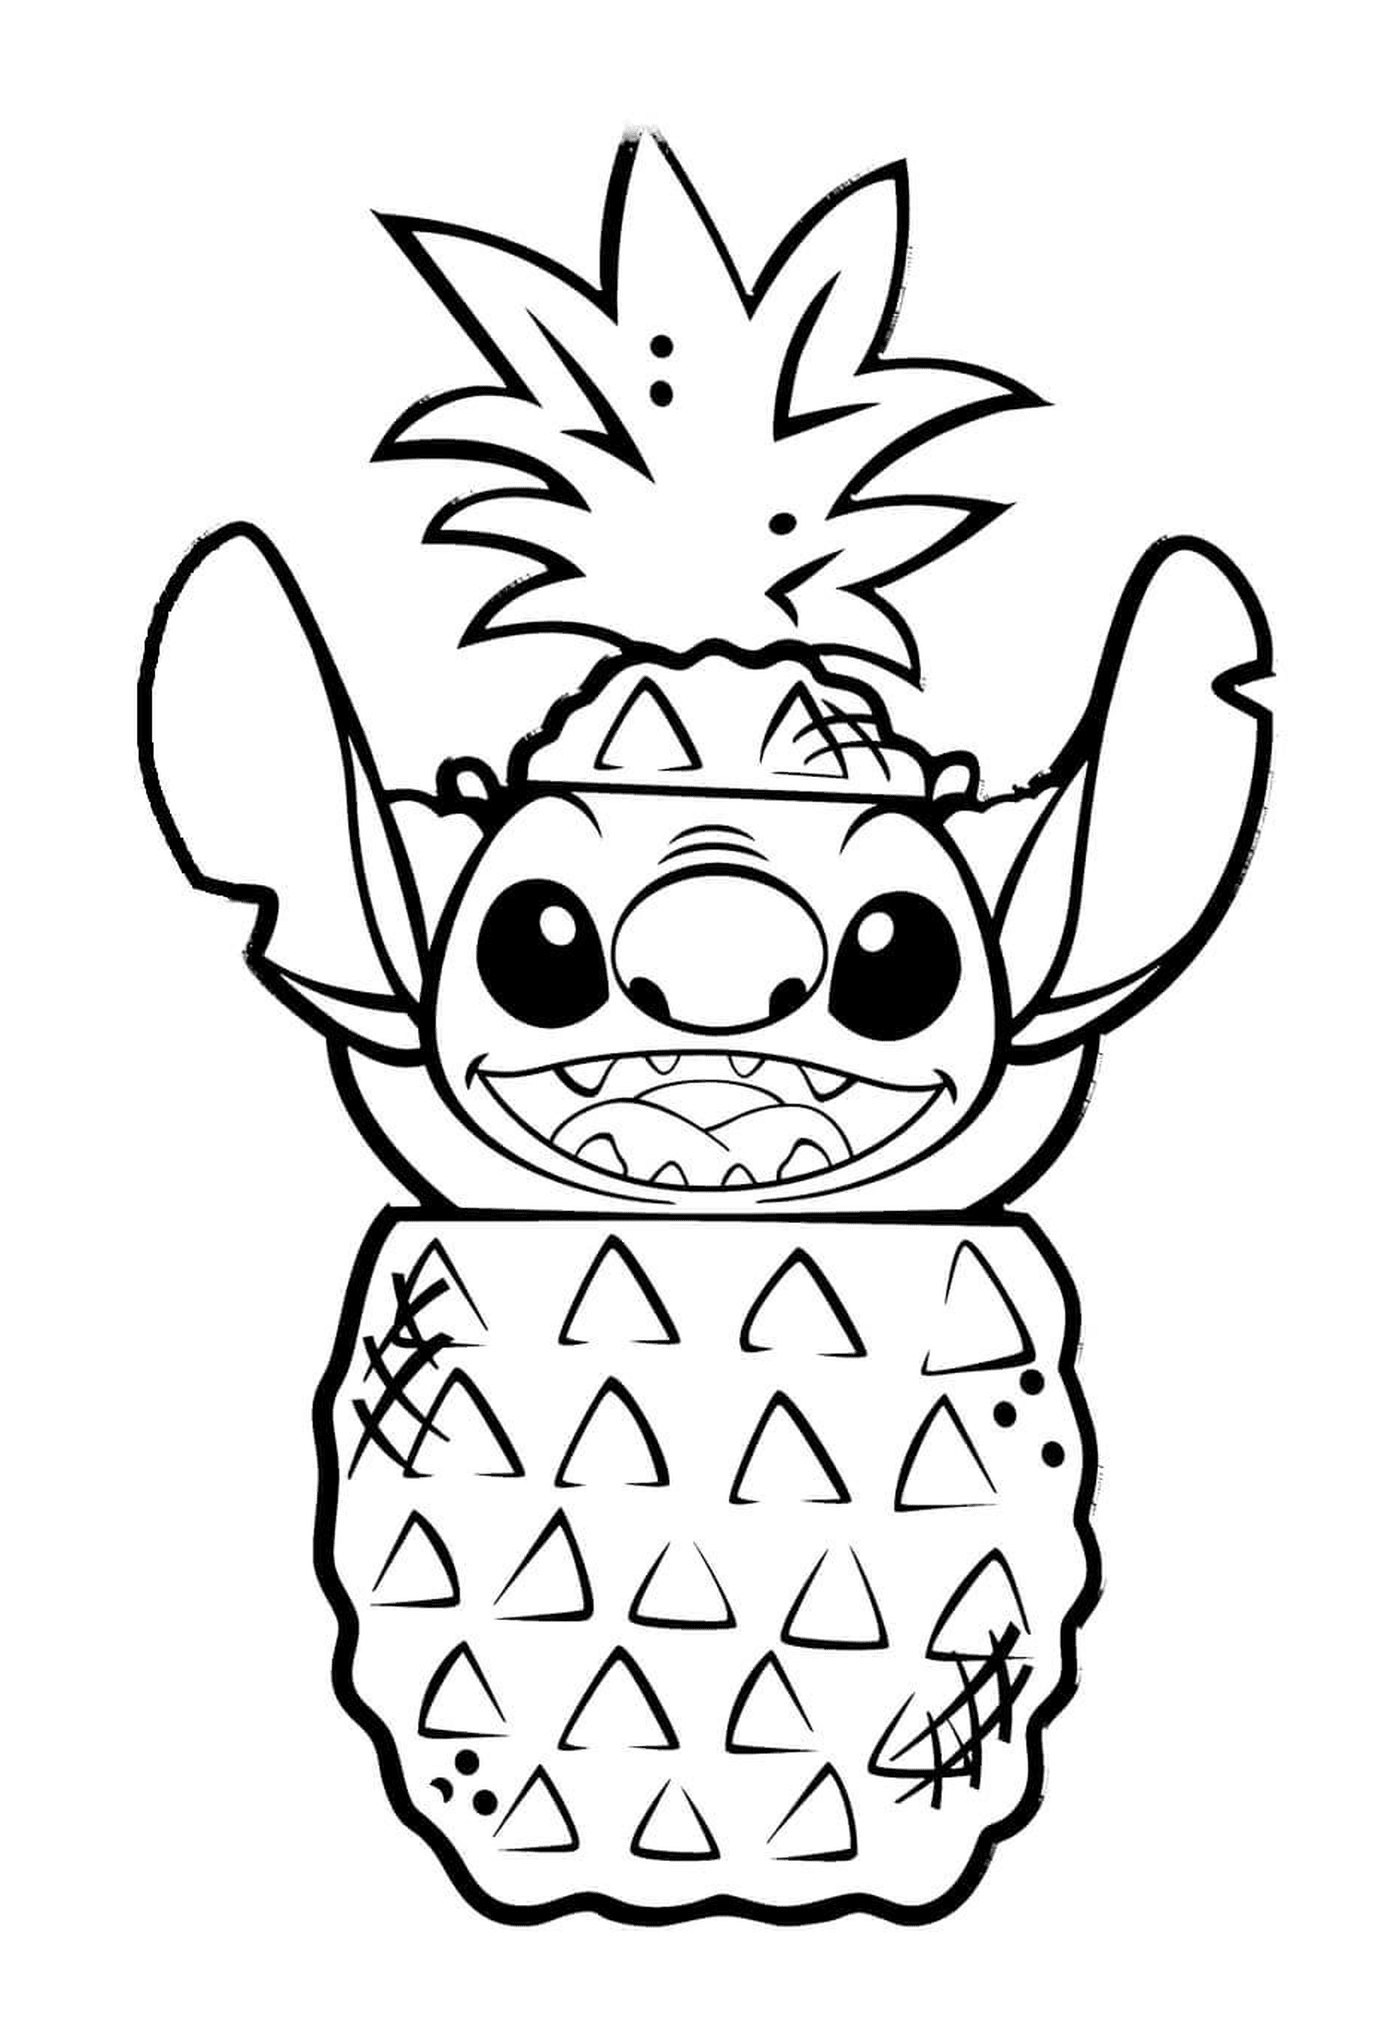  Stitch in a pineapple 